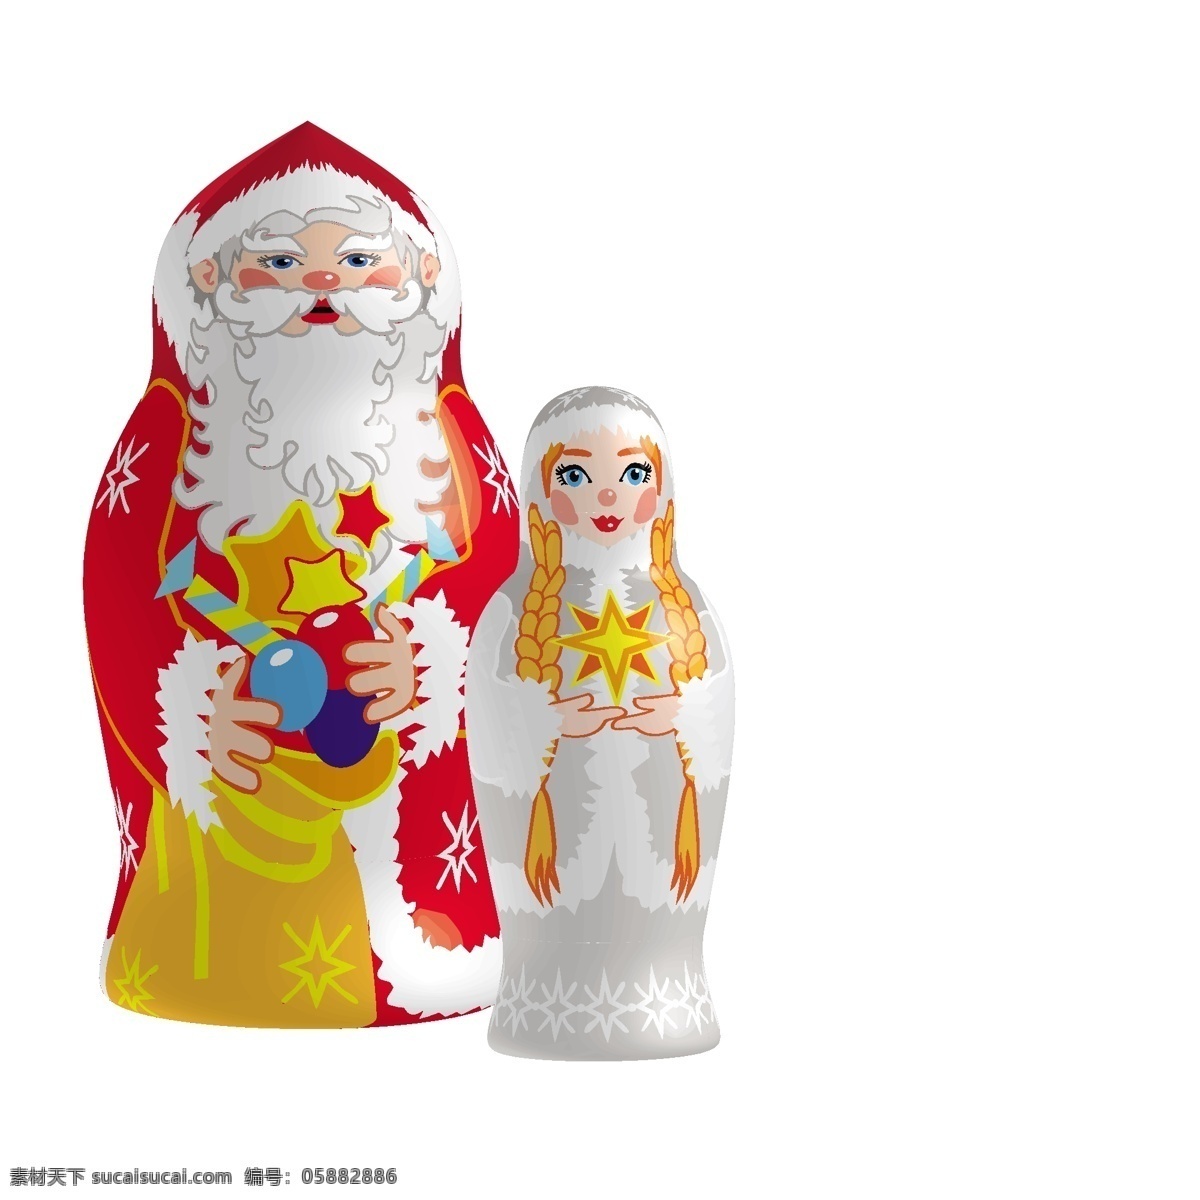 节日素材 圣诞节 矢量 圣诞节素材 玩具 模板下载 圣诞节玩具 俄罗斯圣诞节